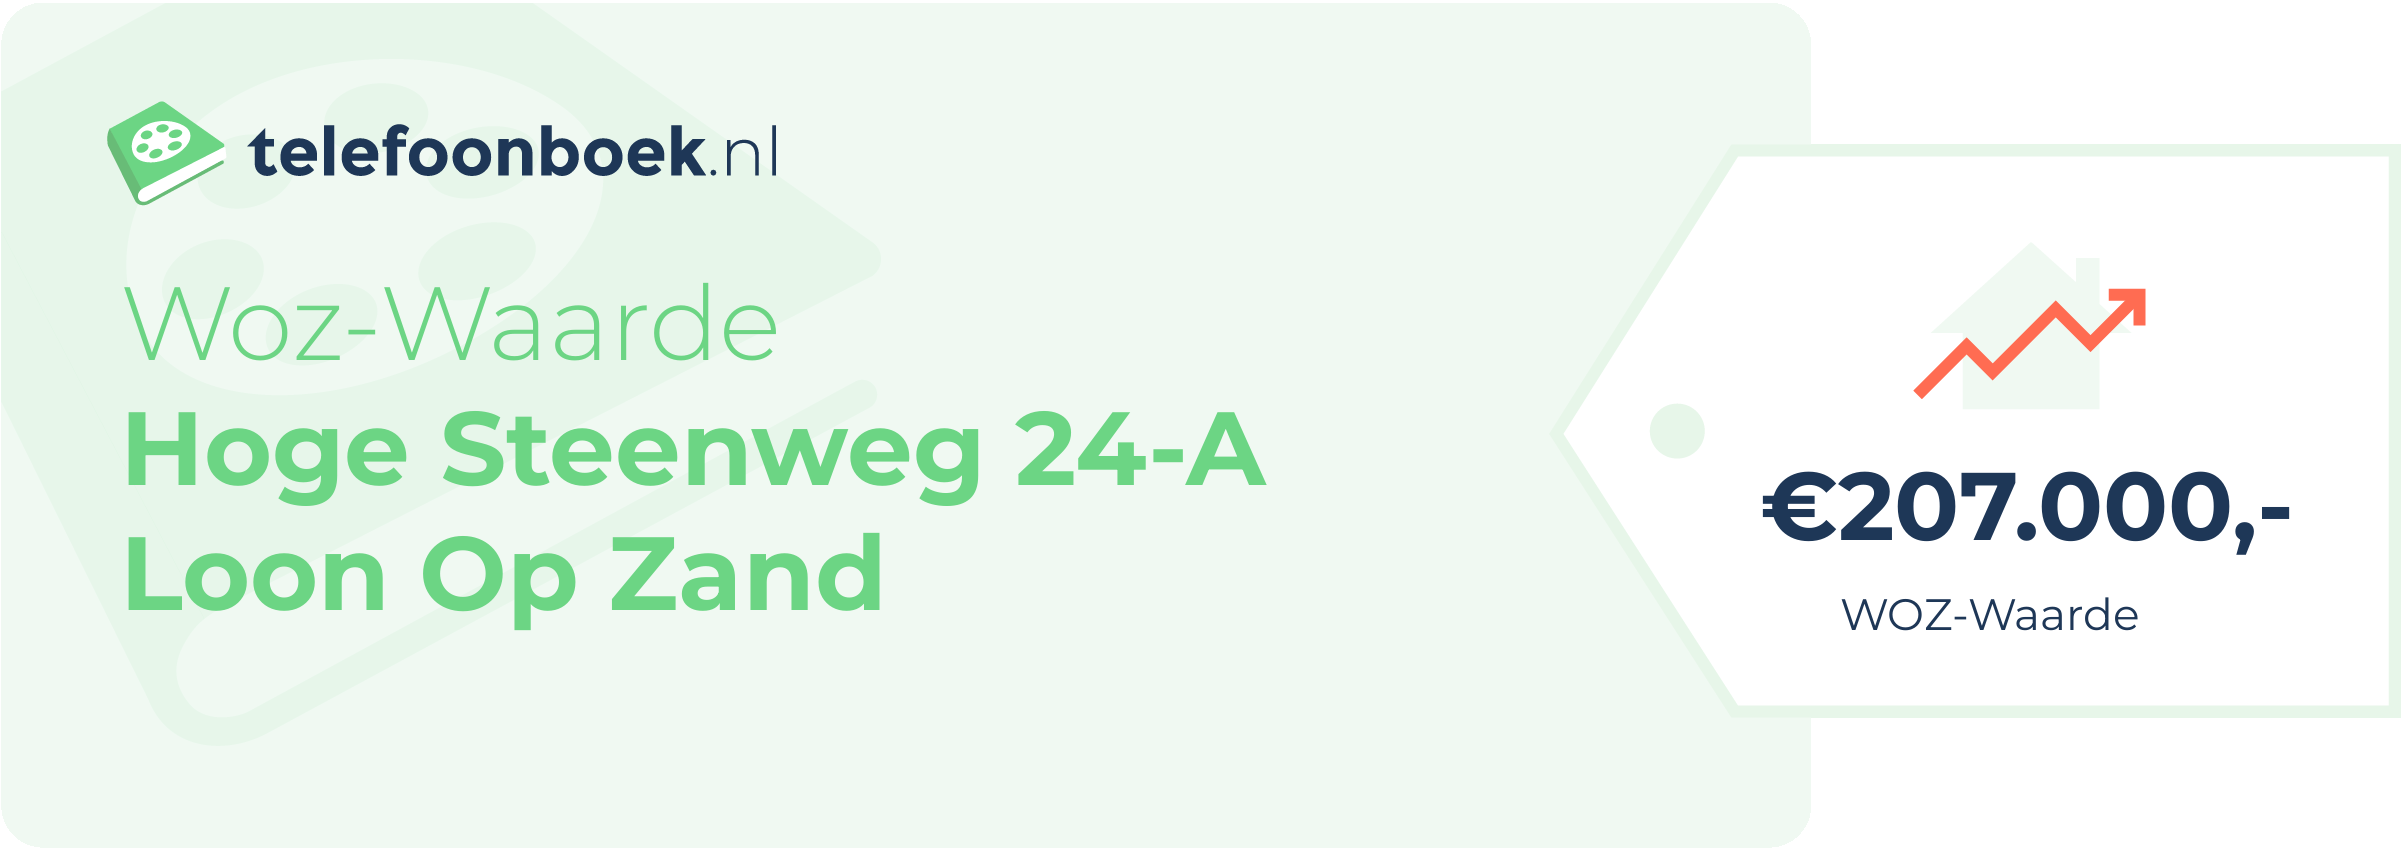 WOZ-waarde Hoge Steenweg 24-A Loon Op Zand